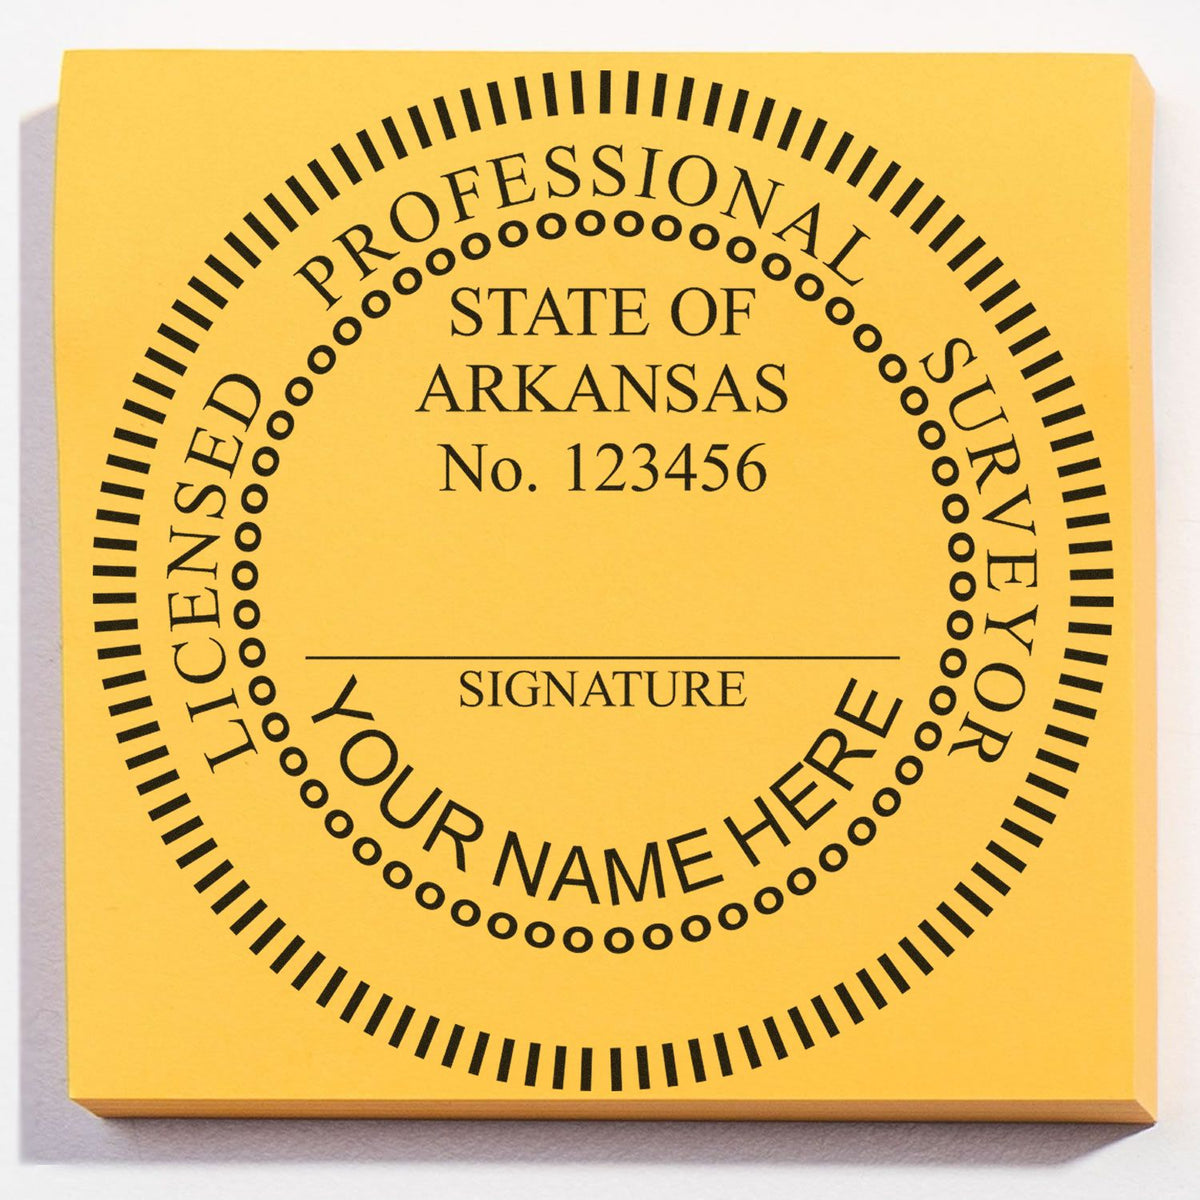 Arkansas Land Surveyor Seal Stamp In Use Photo